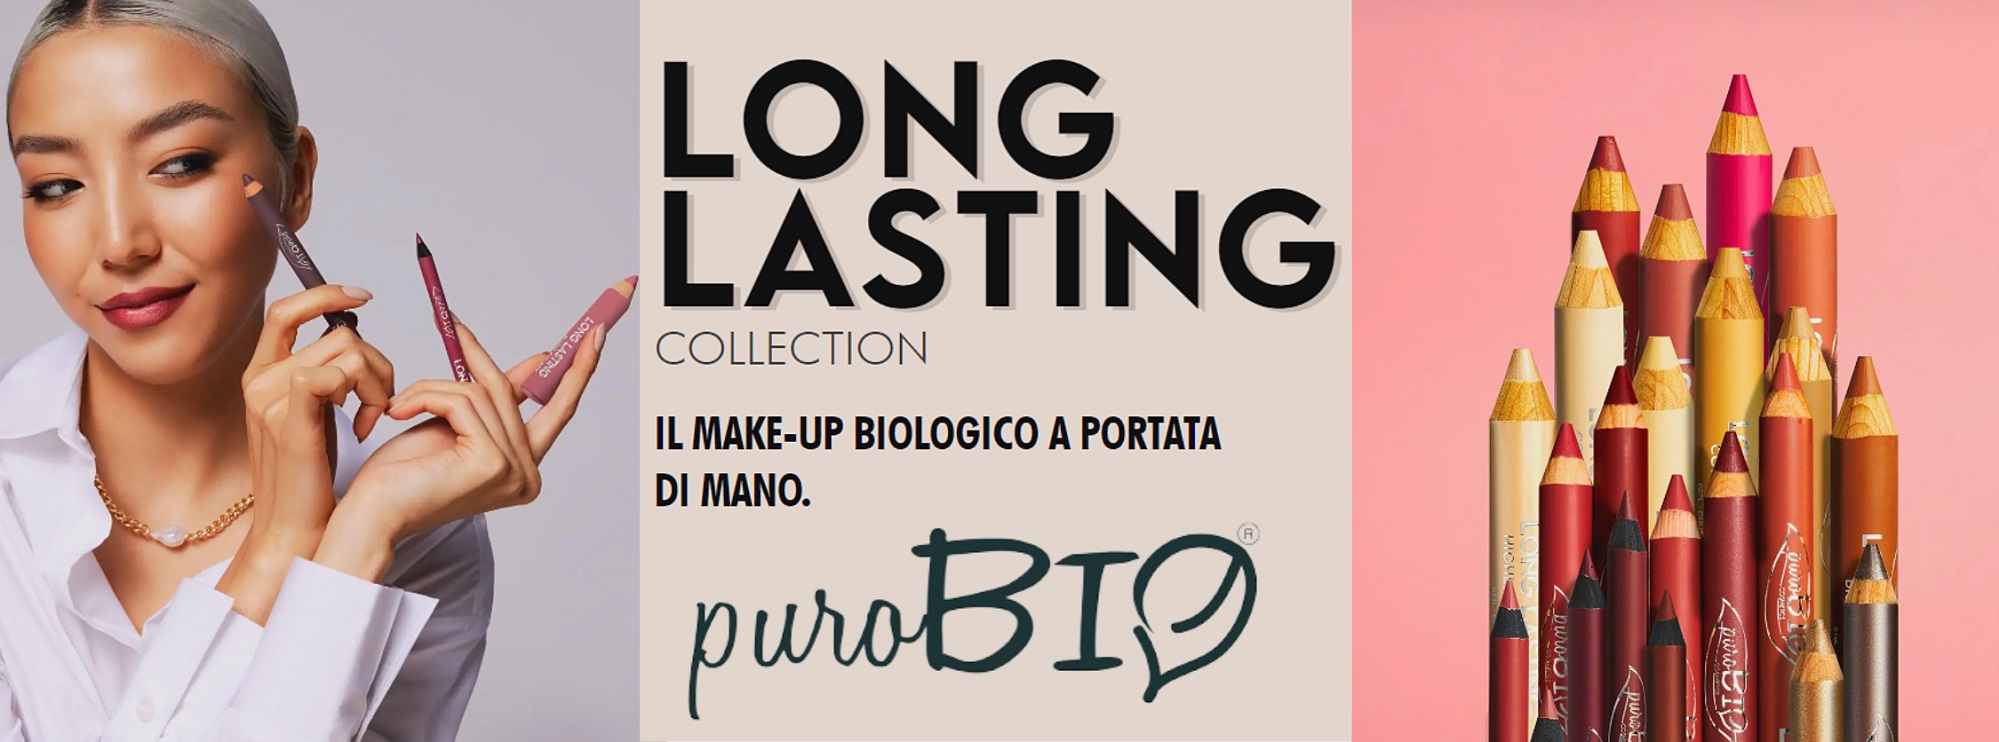 Collezione Puro Bio Long Lasting